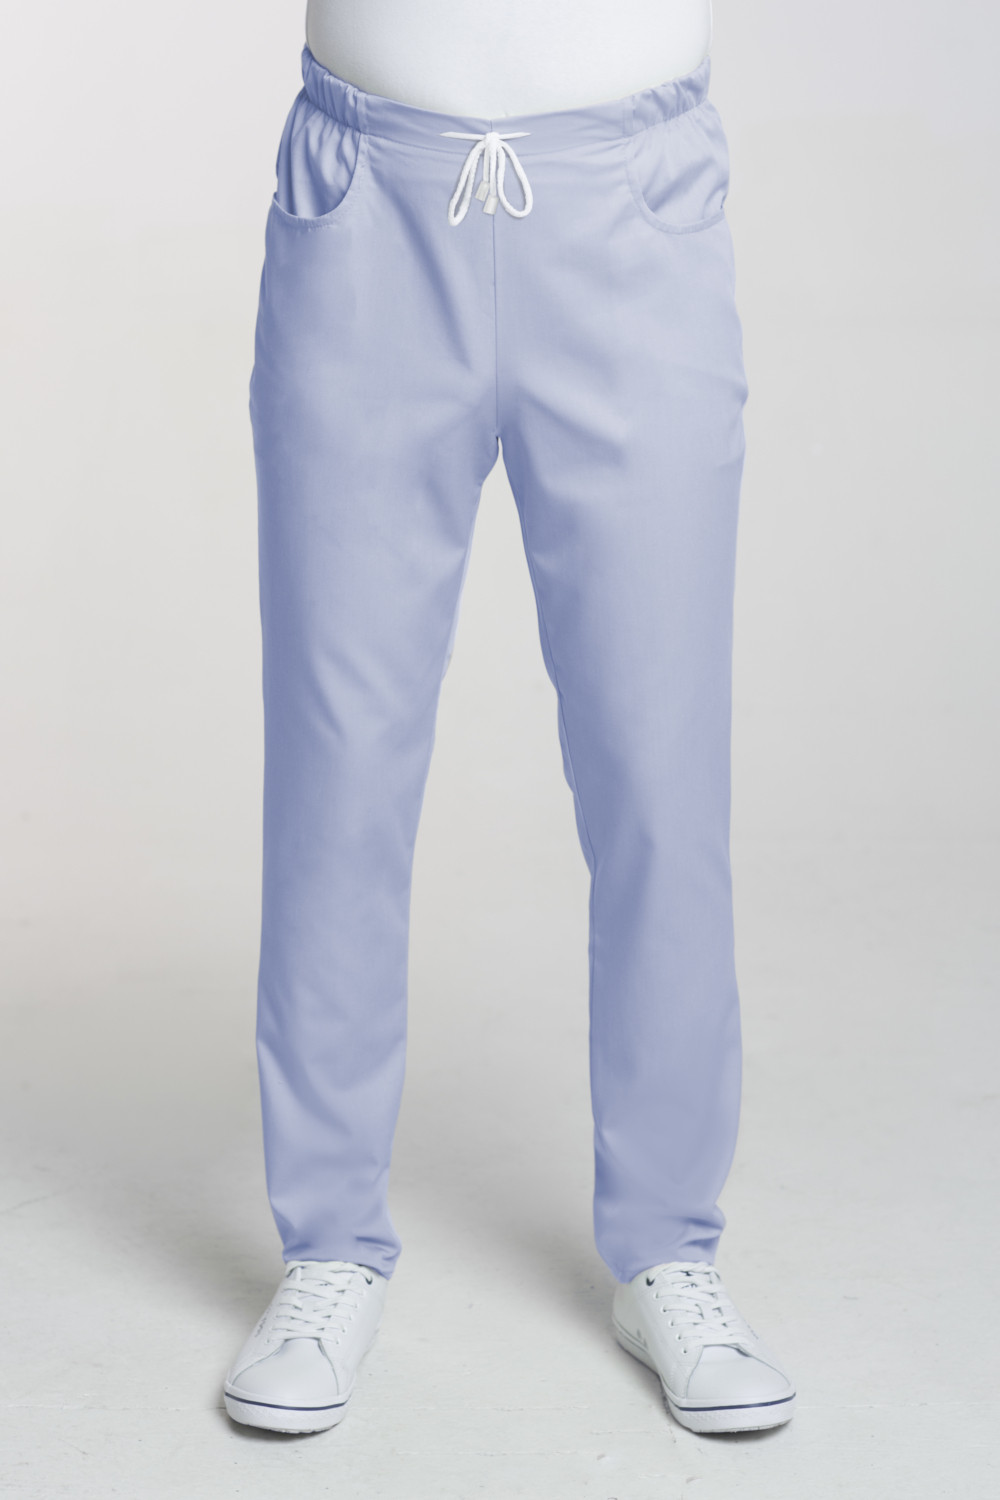 M-101X Spodnie medyczne męskie na sznurku błękit